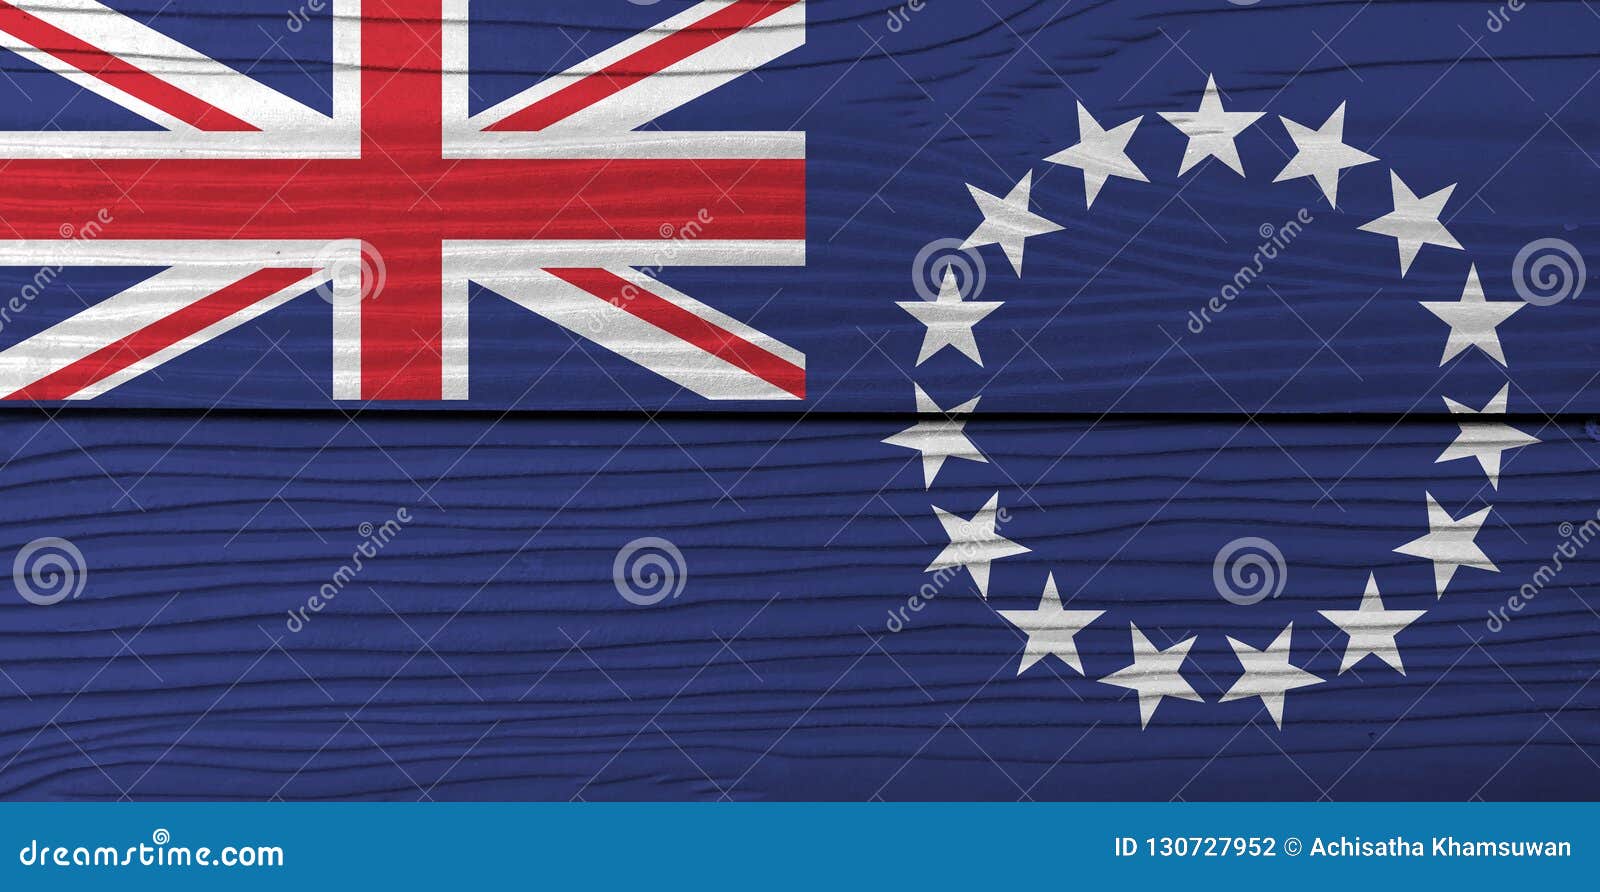 Nếu bạn yêu thích những đảo nhỏ bé, không khí nhiệt đới và của cải địa phương độc đáo, hãy nhấp chuột vào hình ảnh liên quan đến lá cờ Cook Islands. Bạn sẽ được khám phá ra những bí mật thú vị về quốc gia nhỏ bé này trên đại dương Thái Bình Dương.